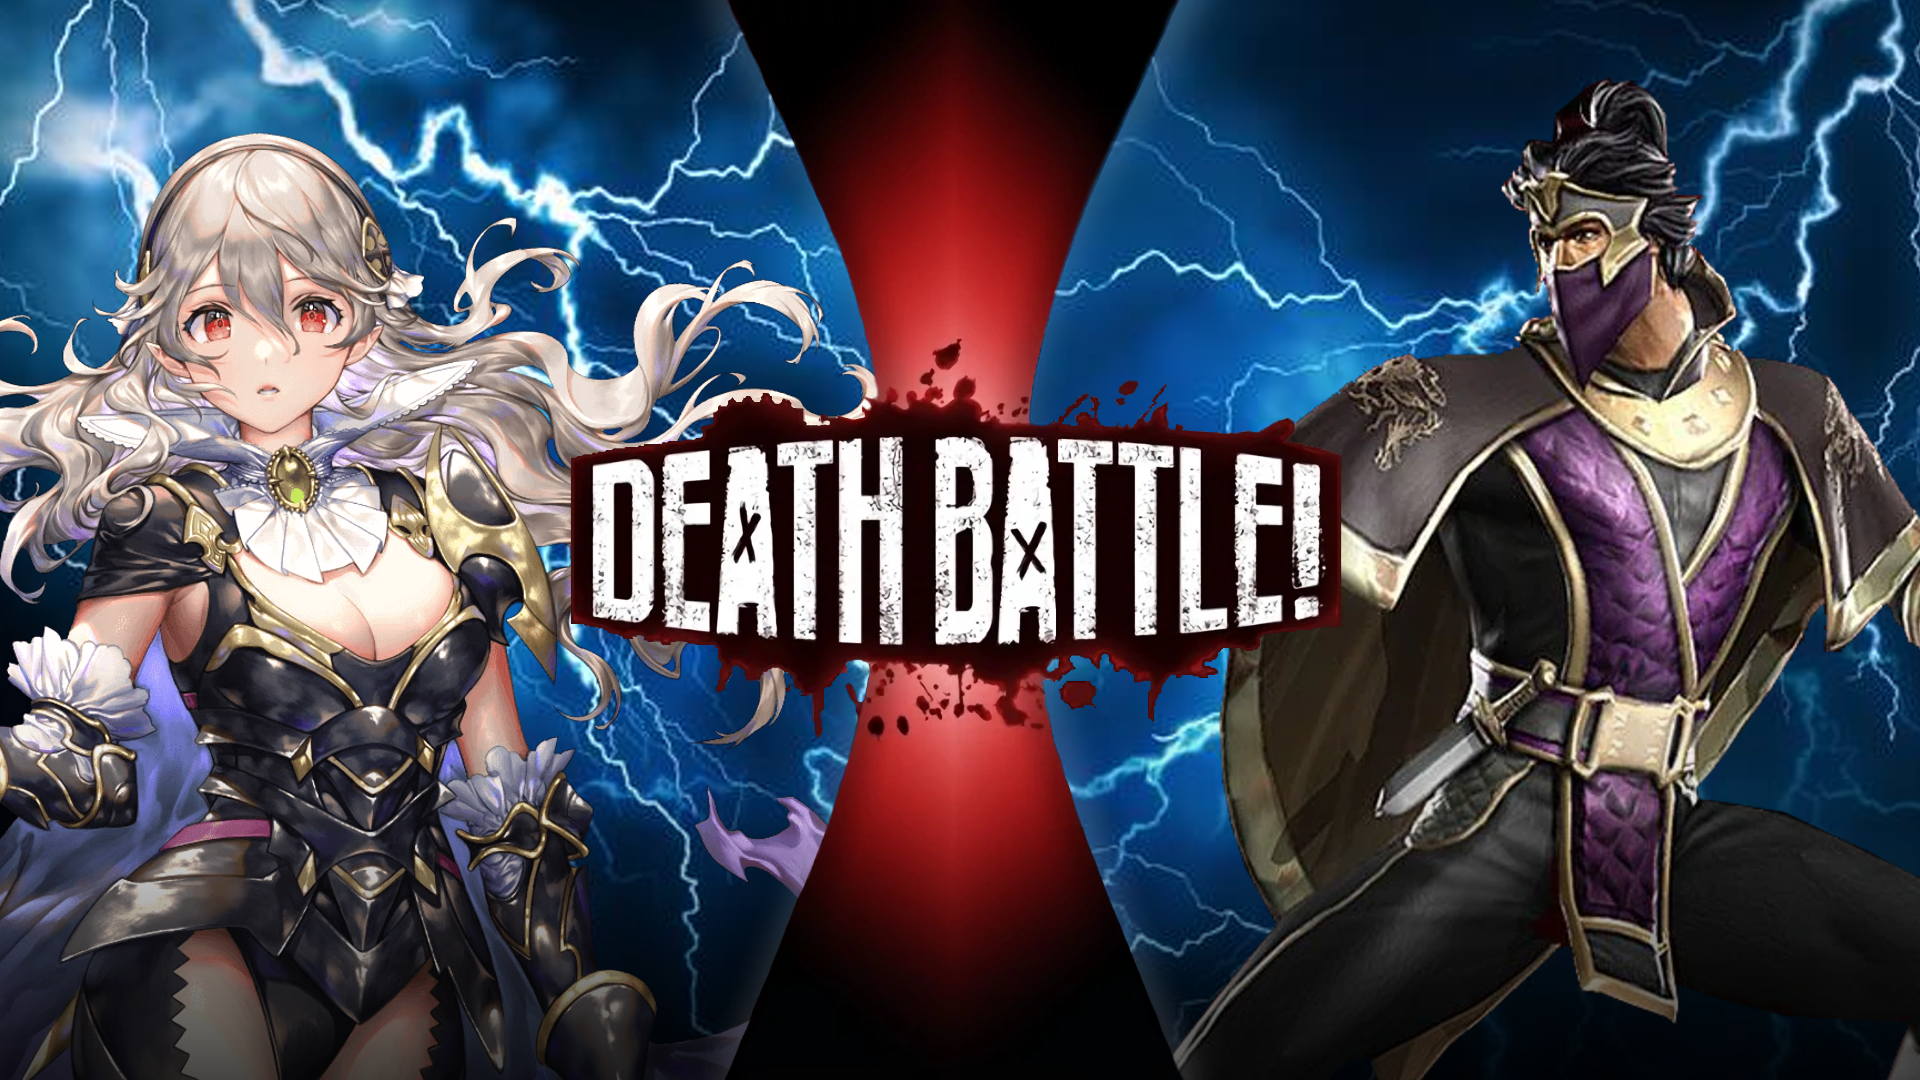 Devil Kazuya Mishima vs Krillin - Battles - Comic Vine